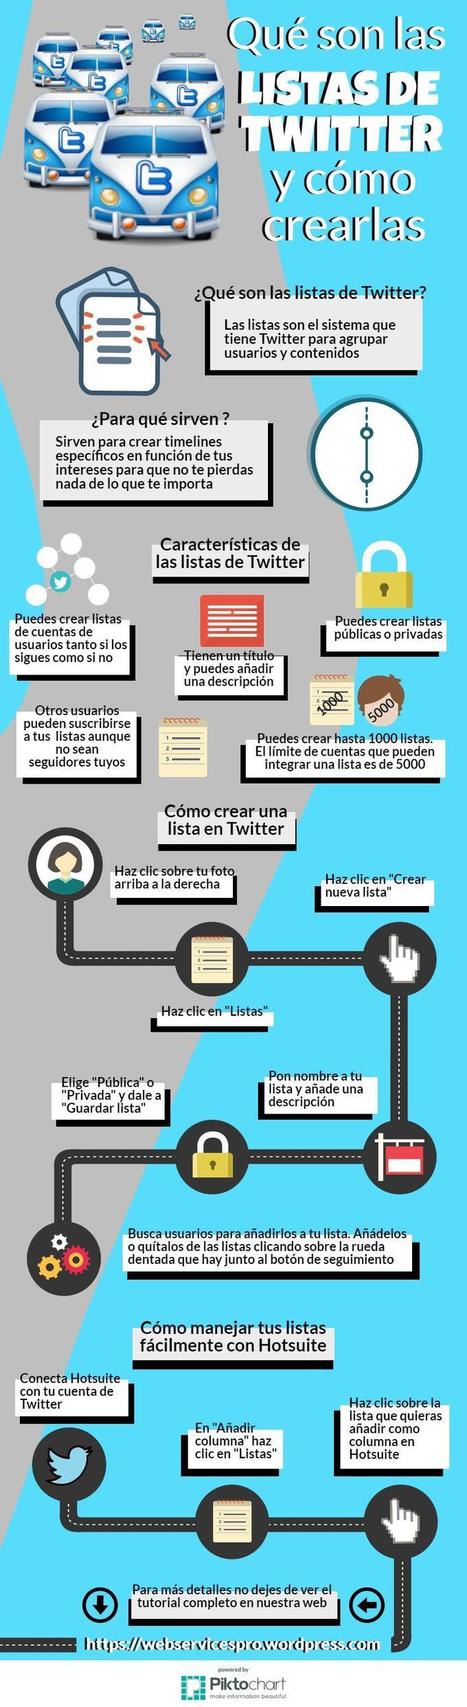 Listas de Twitter: todo lo que debes de saber #infografia #infographic #socialmedia | Educación, TIC y ecología | Scoop.it